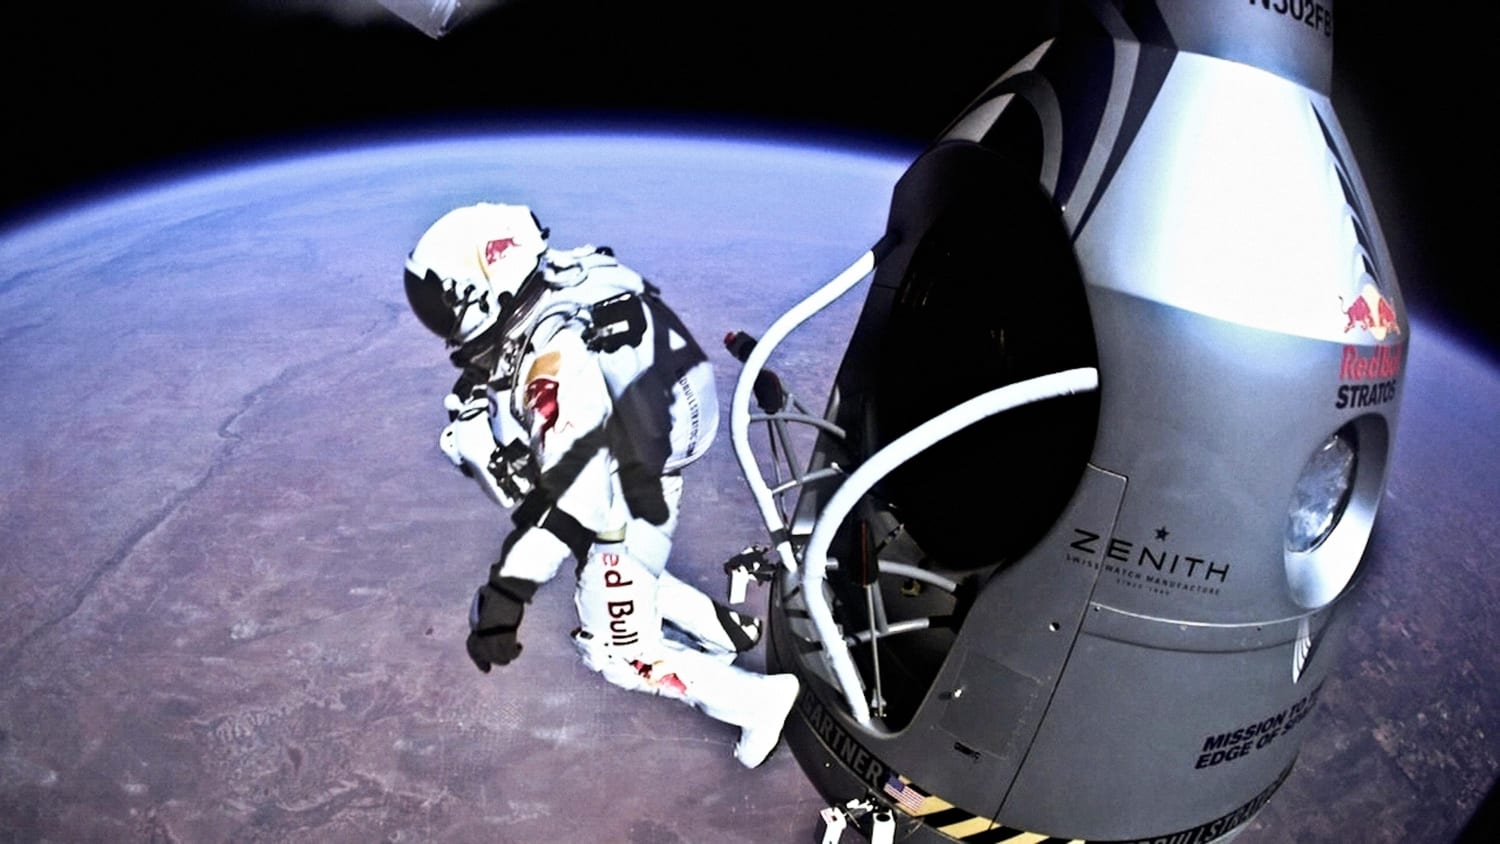 Egenskab telefon sponsor Felix Baumgartner's historic jump: Watch the POV video